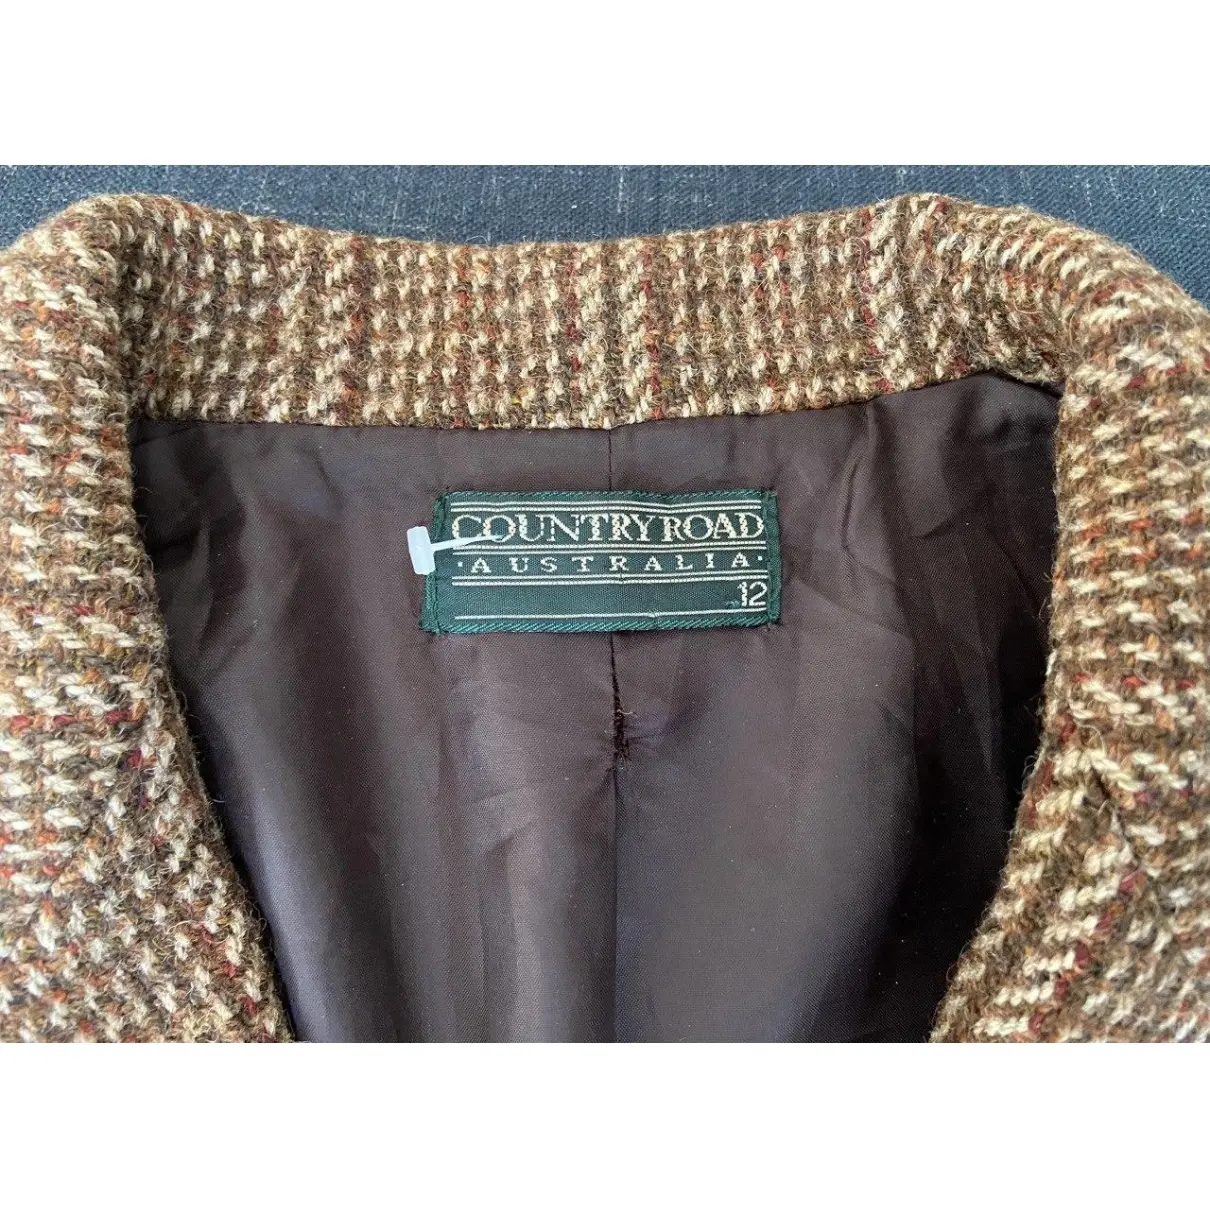 Buy Country Road Wool blazer online - Vintage